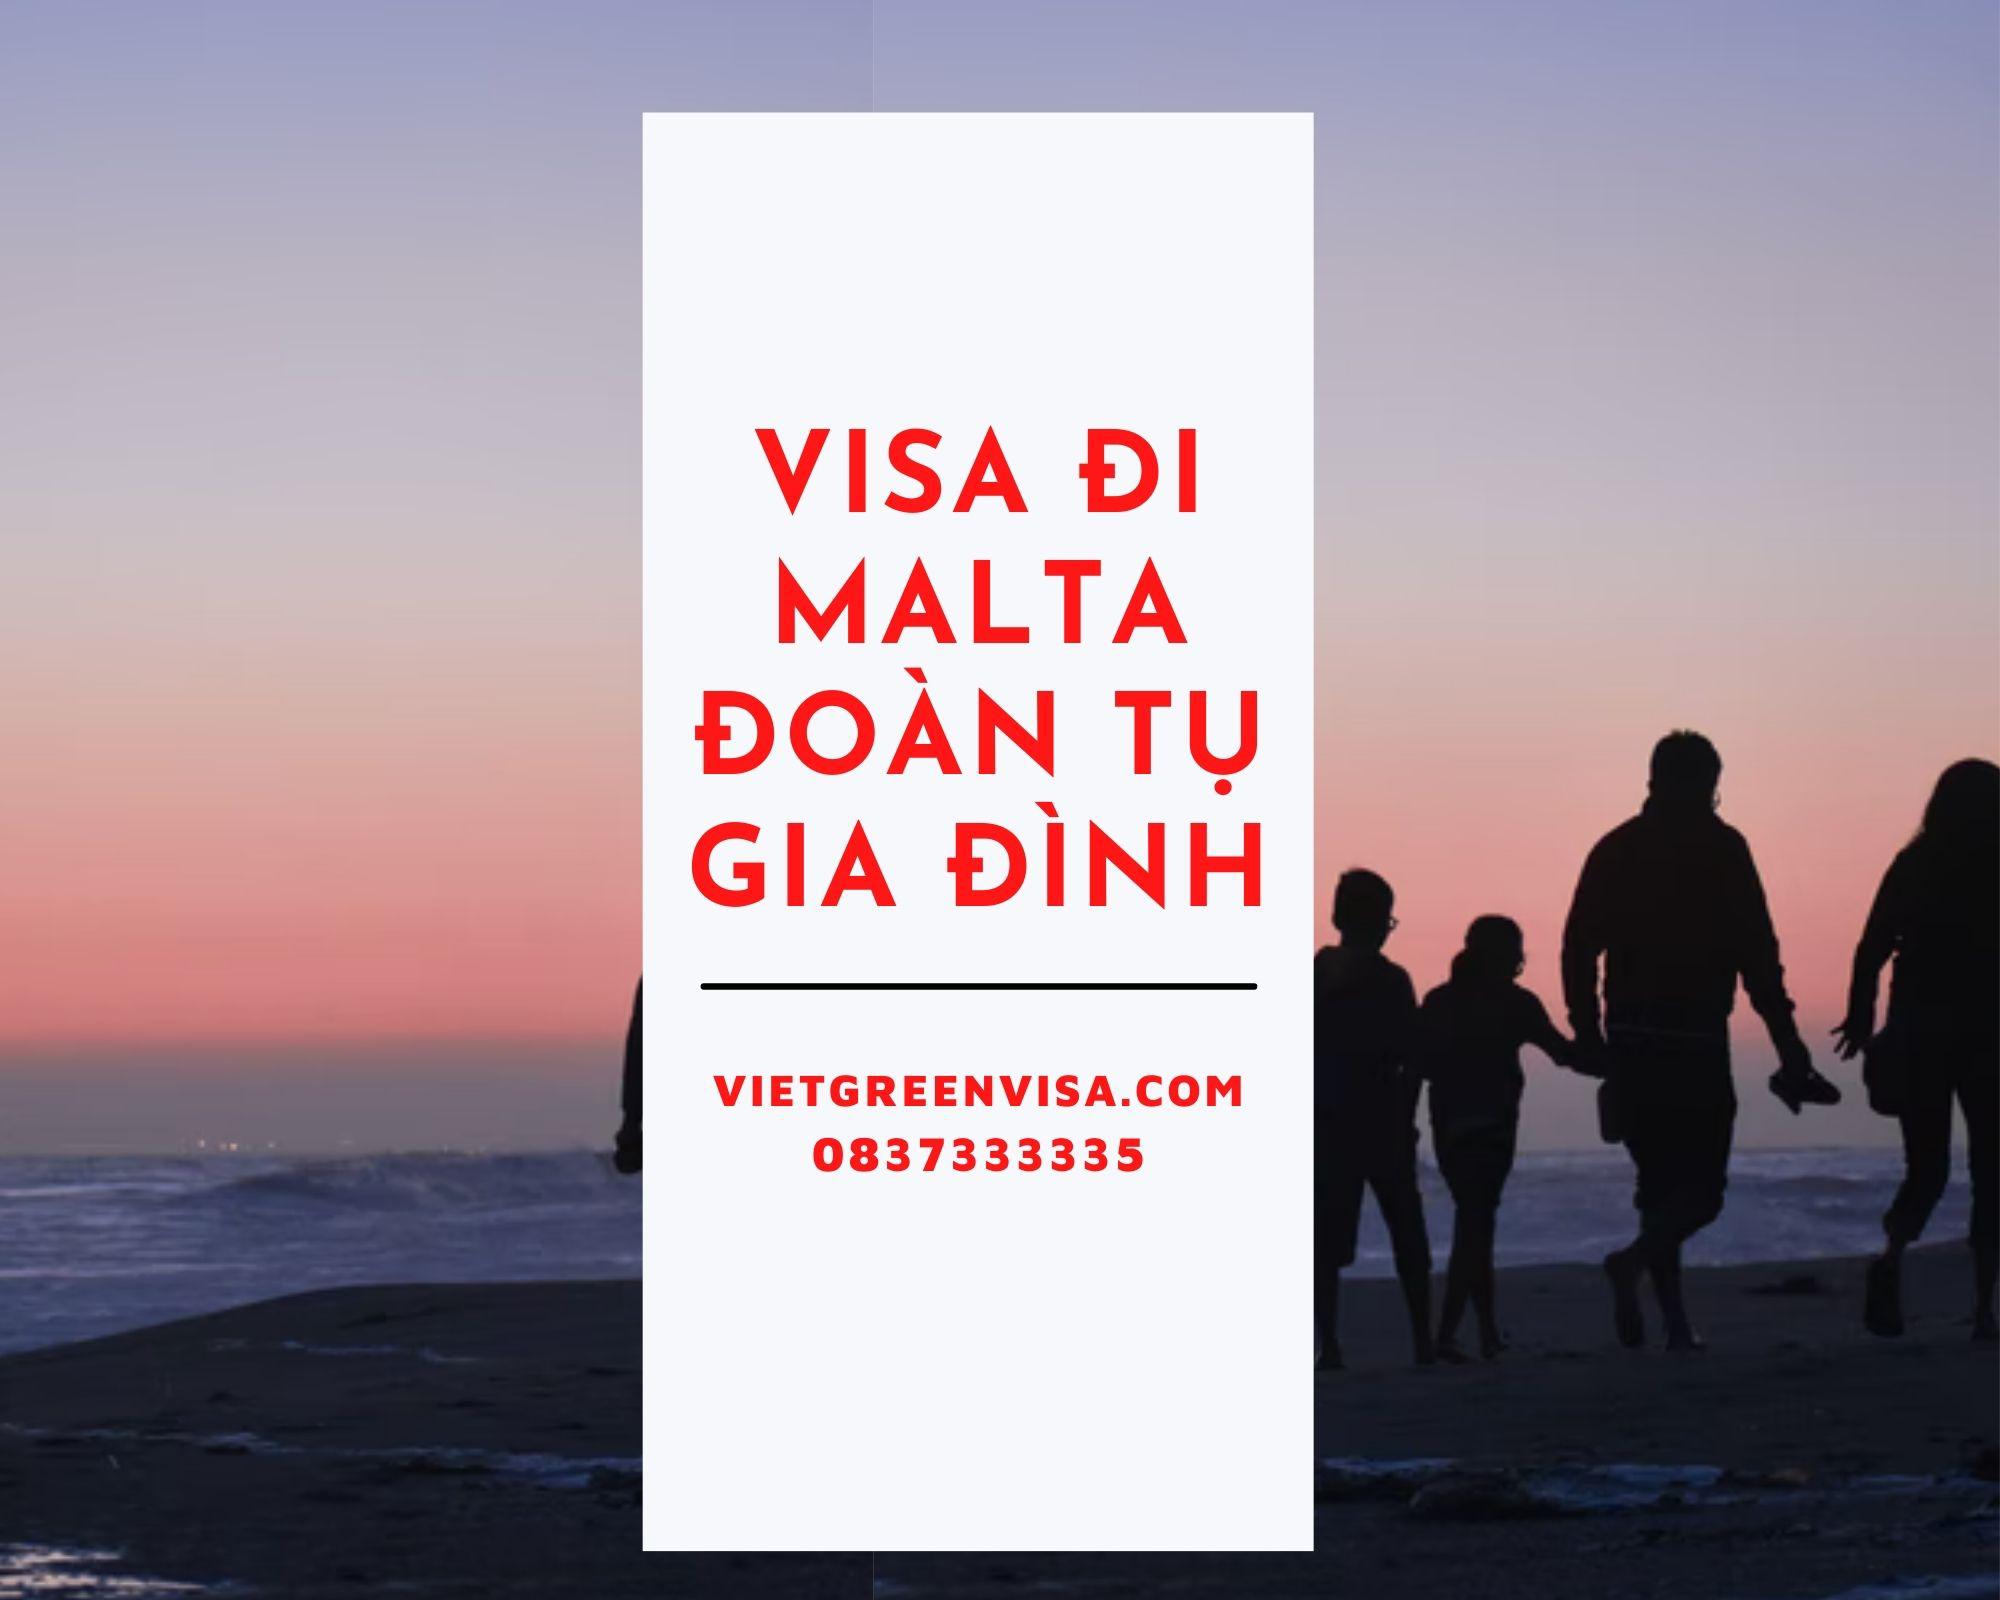 Hỗ trợ làm visa sang Malta đoàn tụ gia đình cùng vợ/chồng hoặc bố/mẹ/con